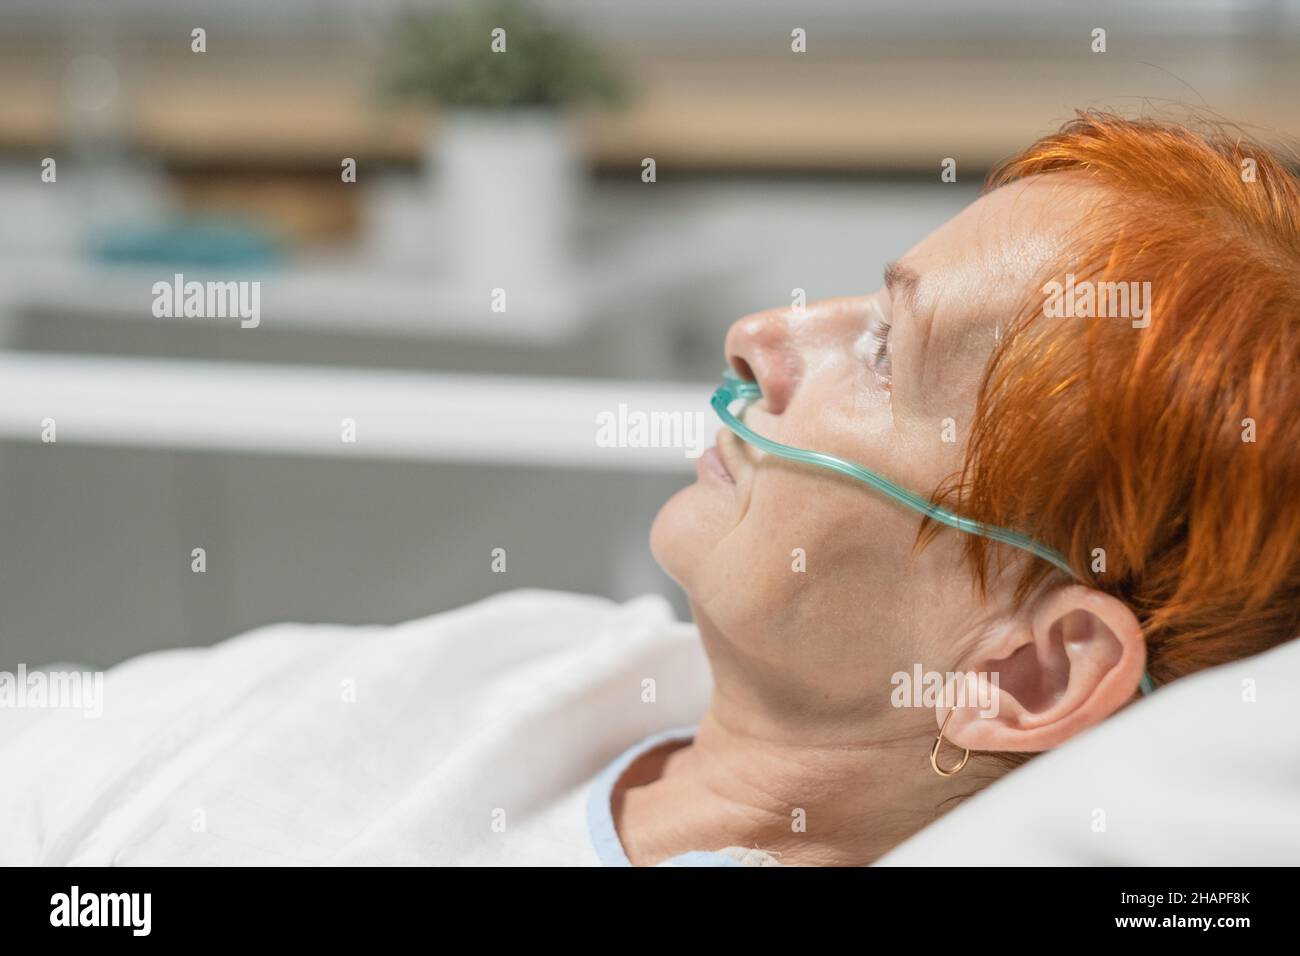 Primo piano di una donna anziana con tubo nel naso per respirare facilmente, si trova a letto in reparto ospedale Foto Stock